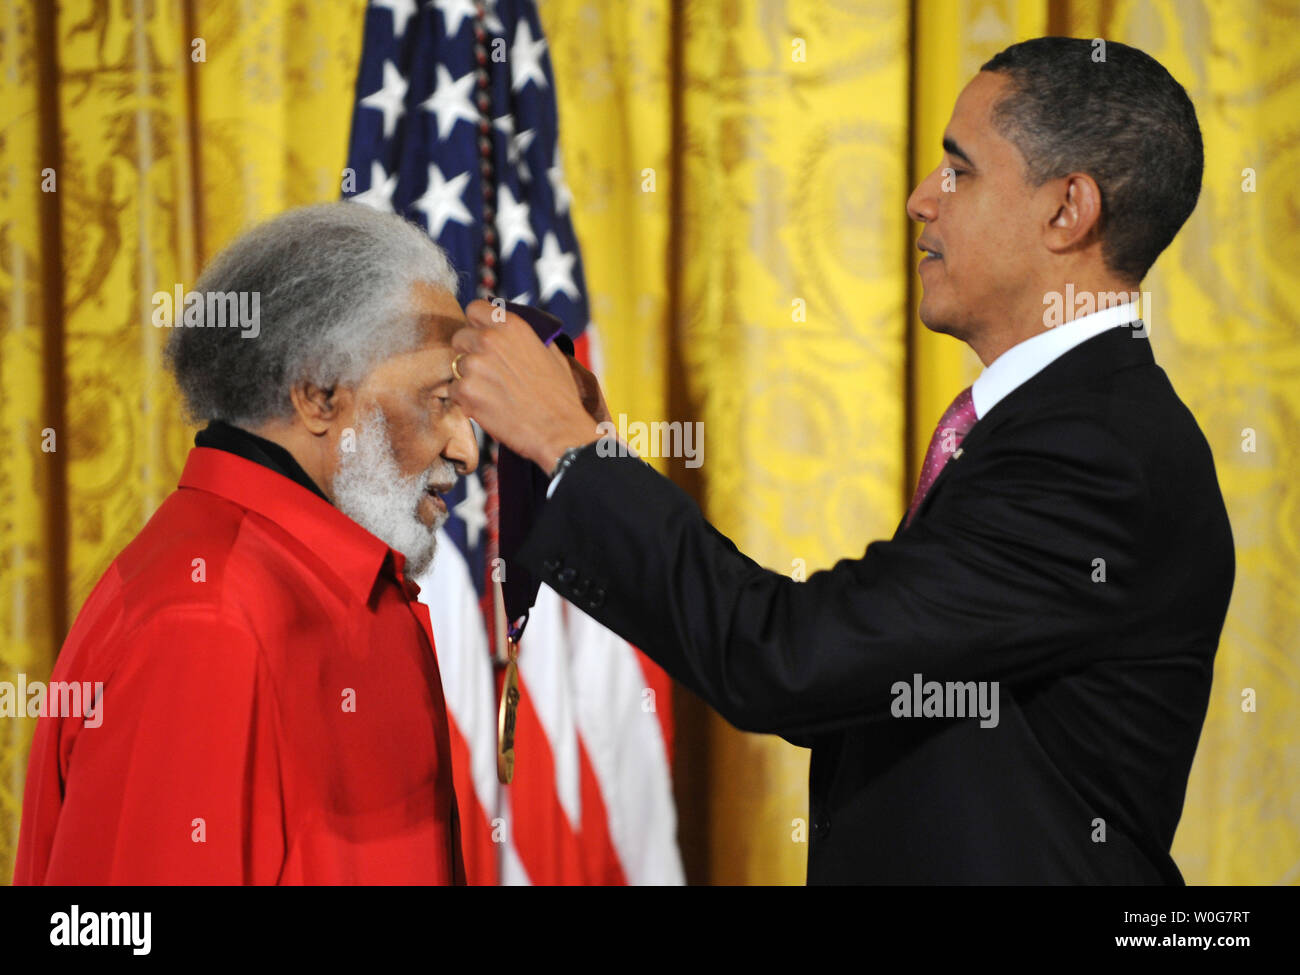 Il Presidente degli Stati Uniti Barack Obama presenta il 2010 National Medal of Arts per la leggenda del jazz Sonny Rollins nella Sala Est della Casa Bianca a Washington il 2 marzo 2011. I premi annuali sono gestite dalla dotazione nazionale per le arti. UPI/Pat Benic Foto Stock